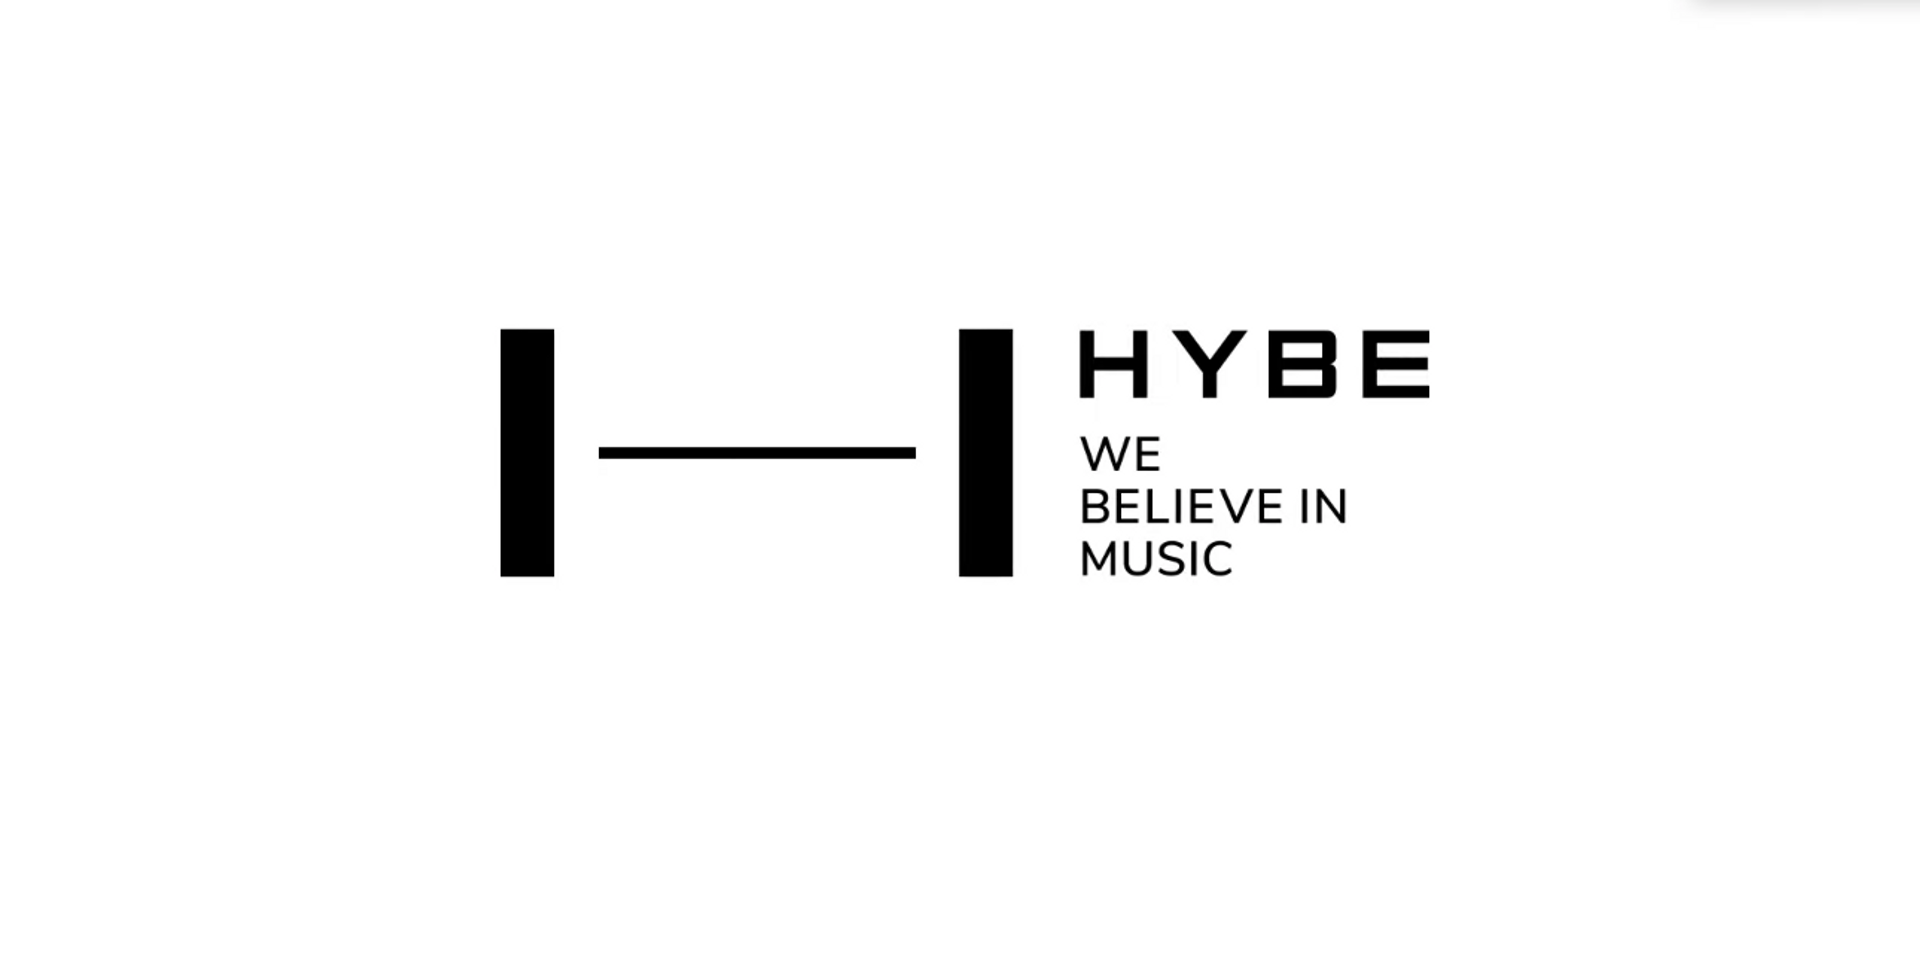 HYBE娱乐注册新商标，BTS师妹团确定在第四季度正式出道